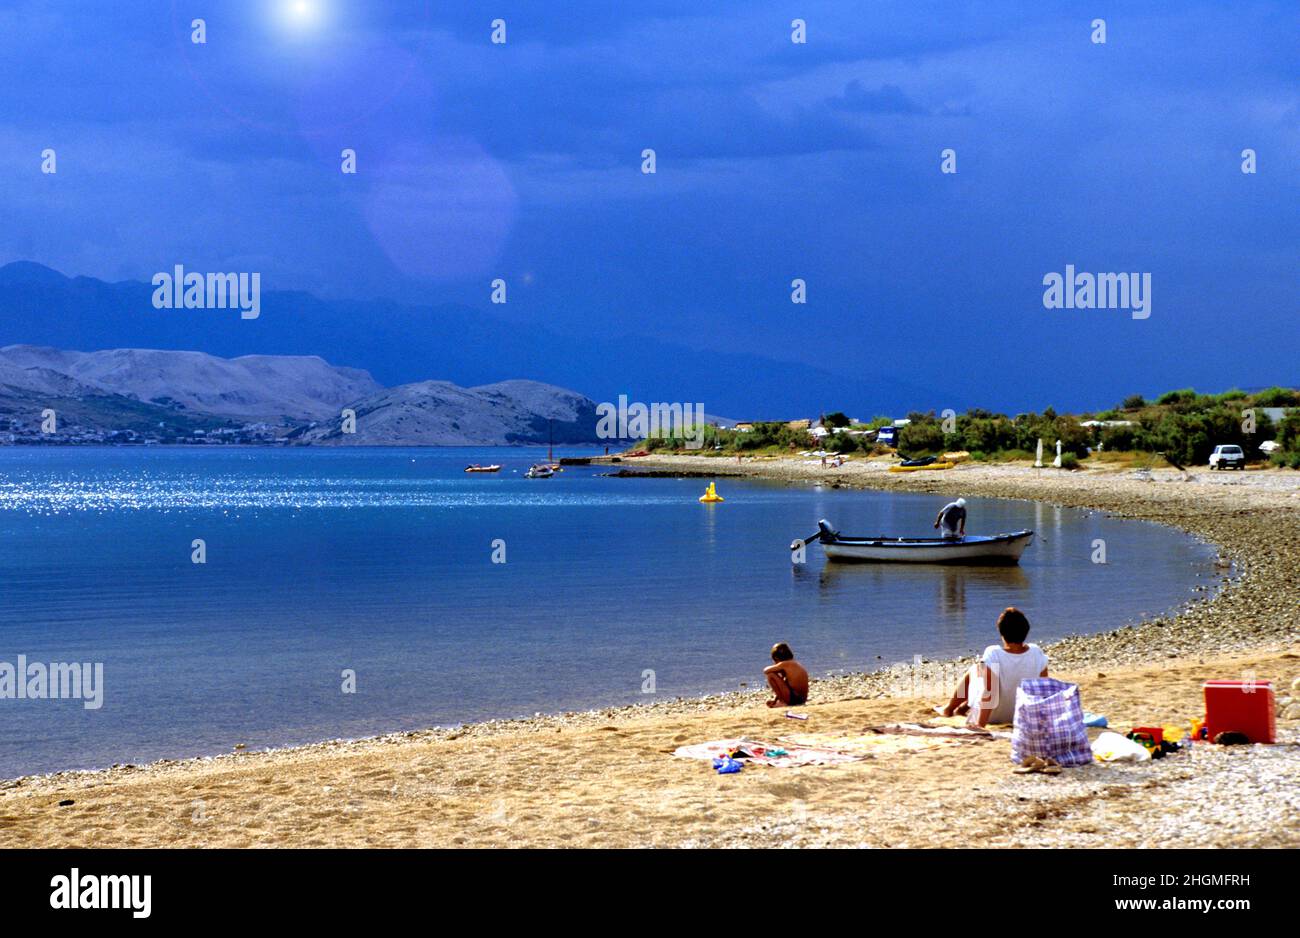 Beach scene and Coastline, Croatia Stock Photo